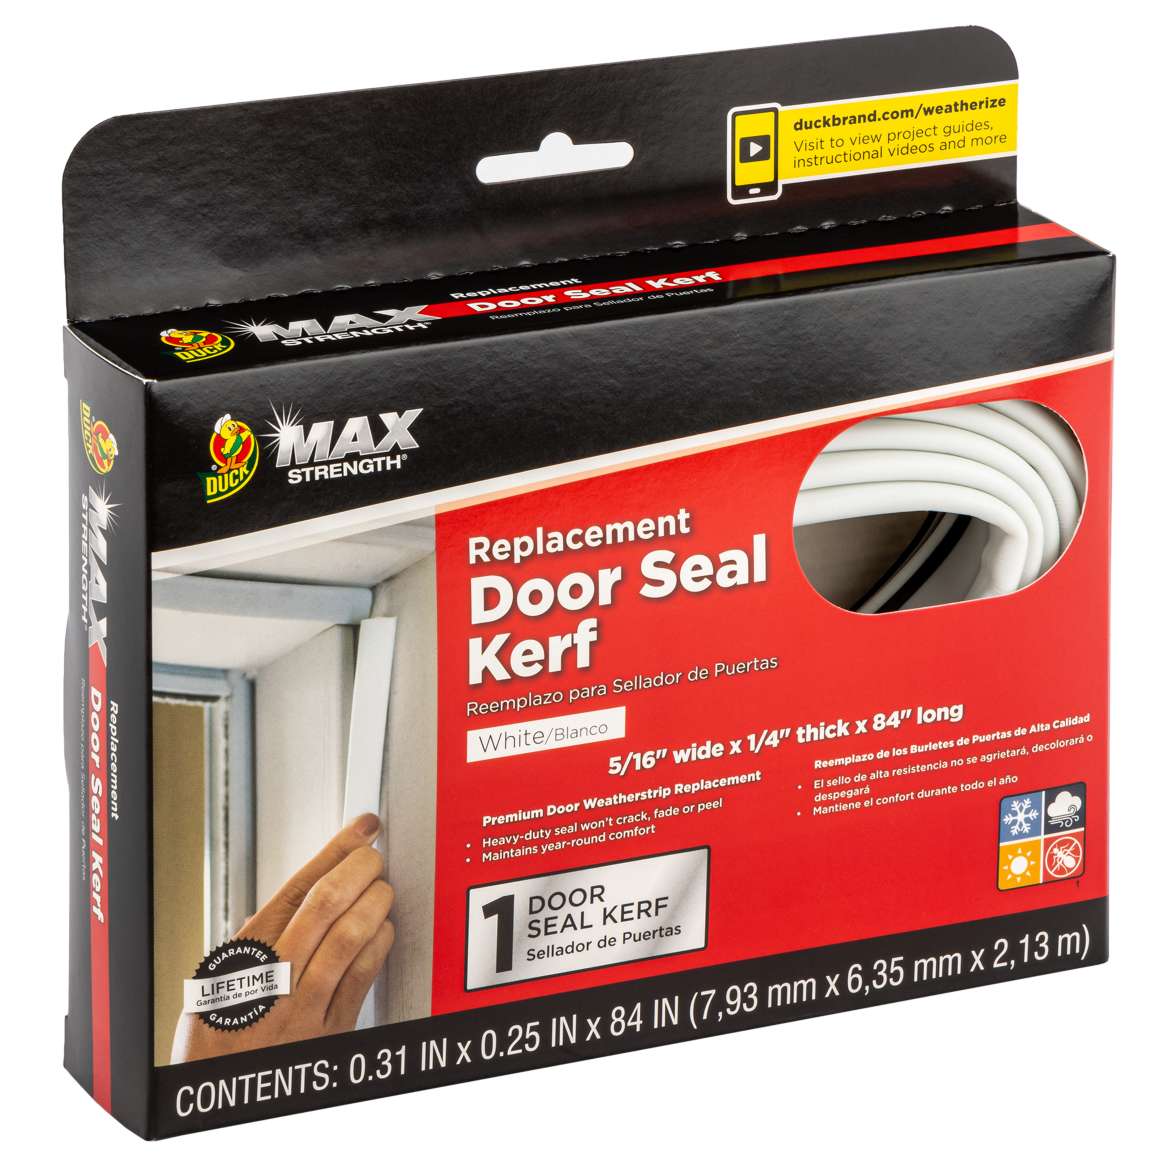 Max Strength Replacement Door Seal Image